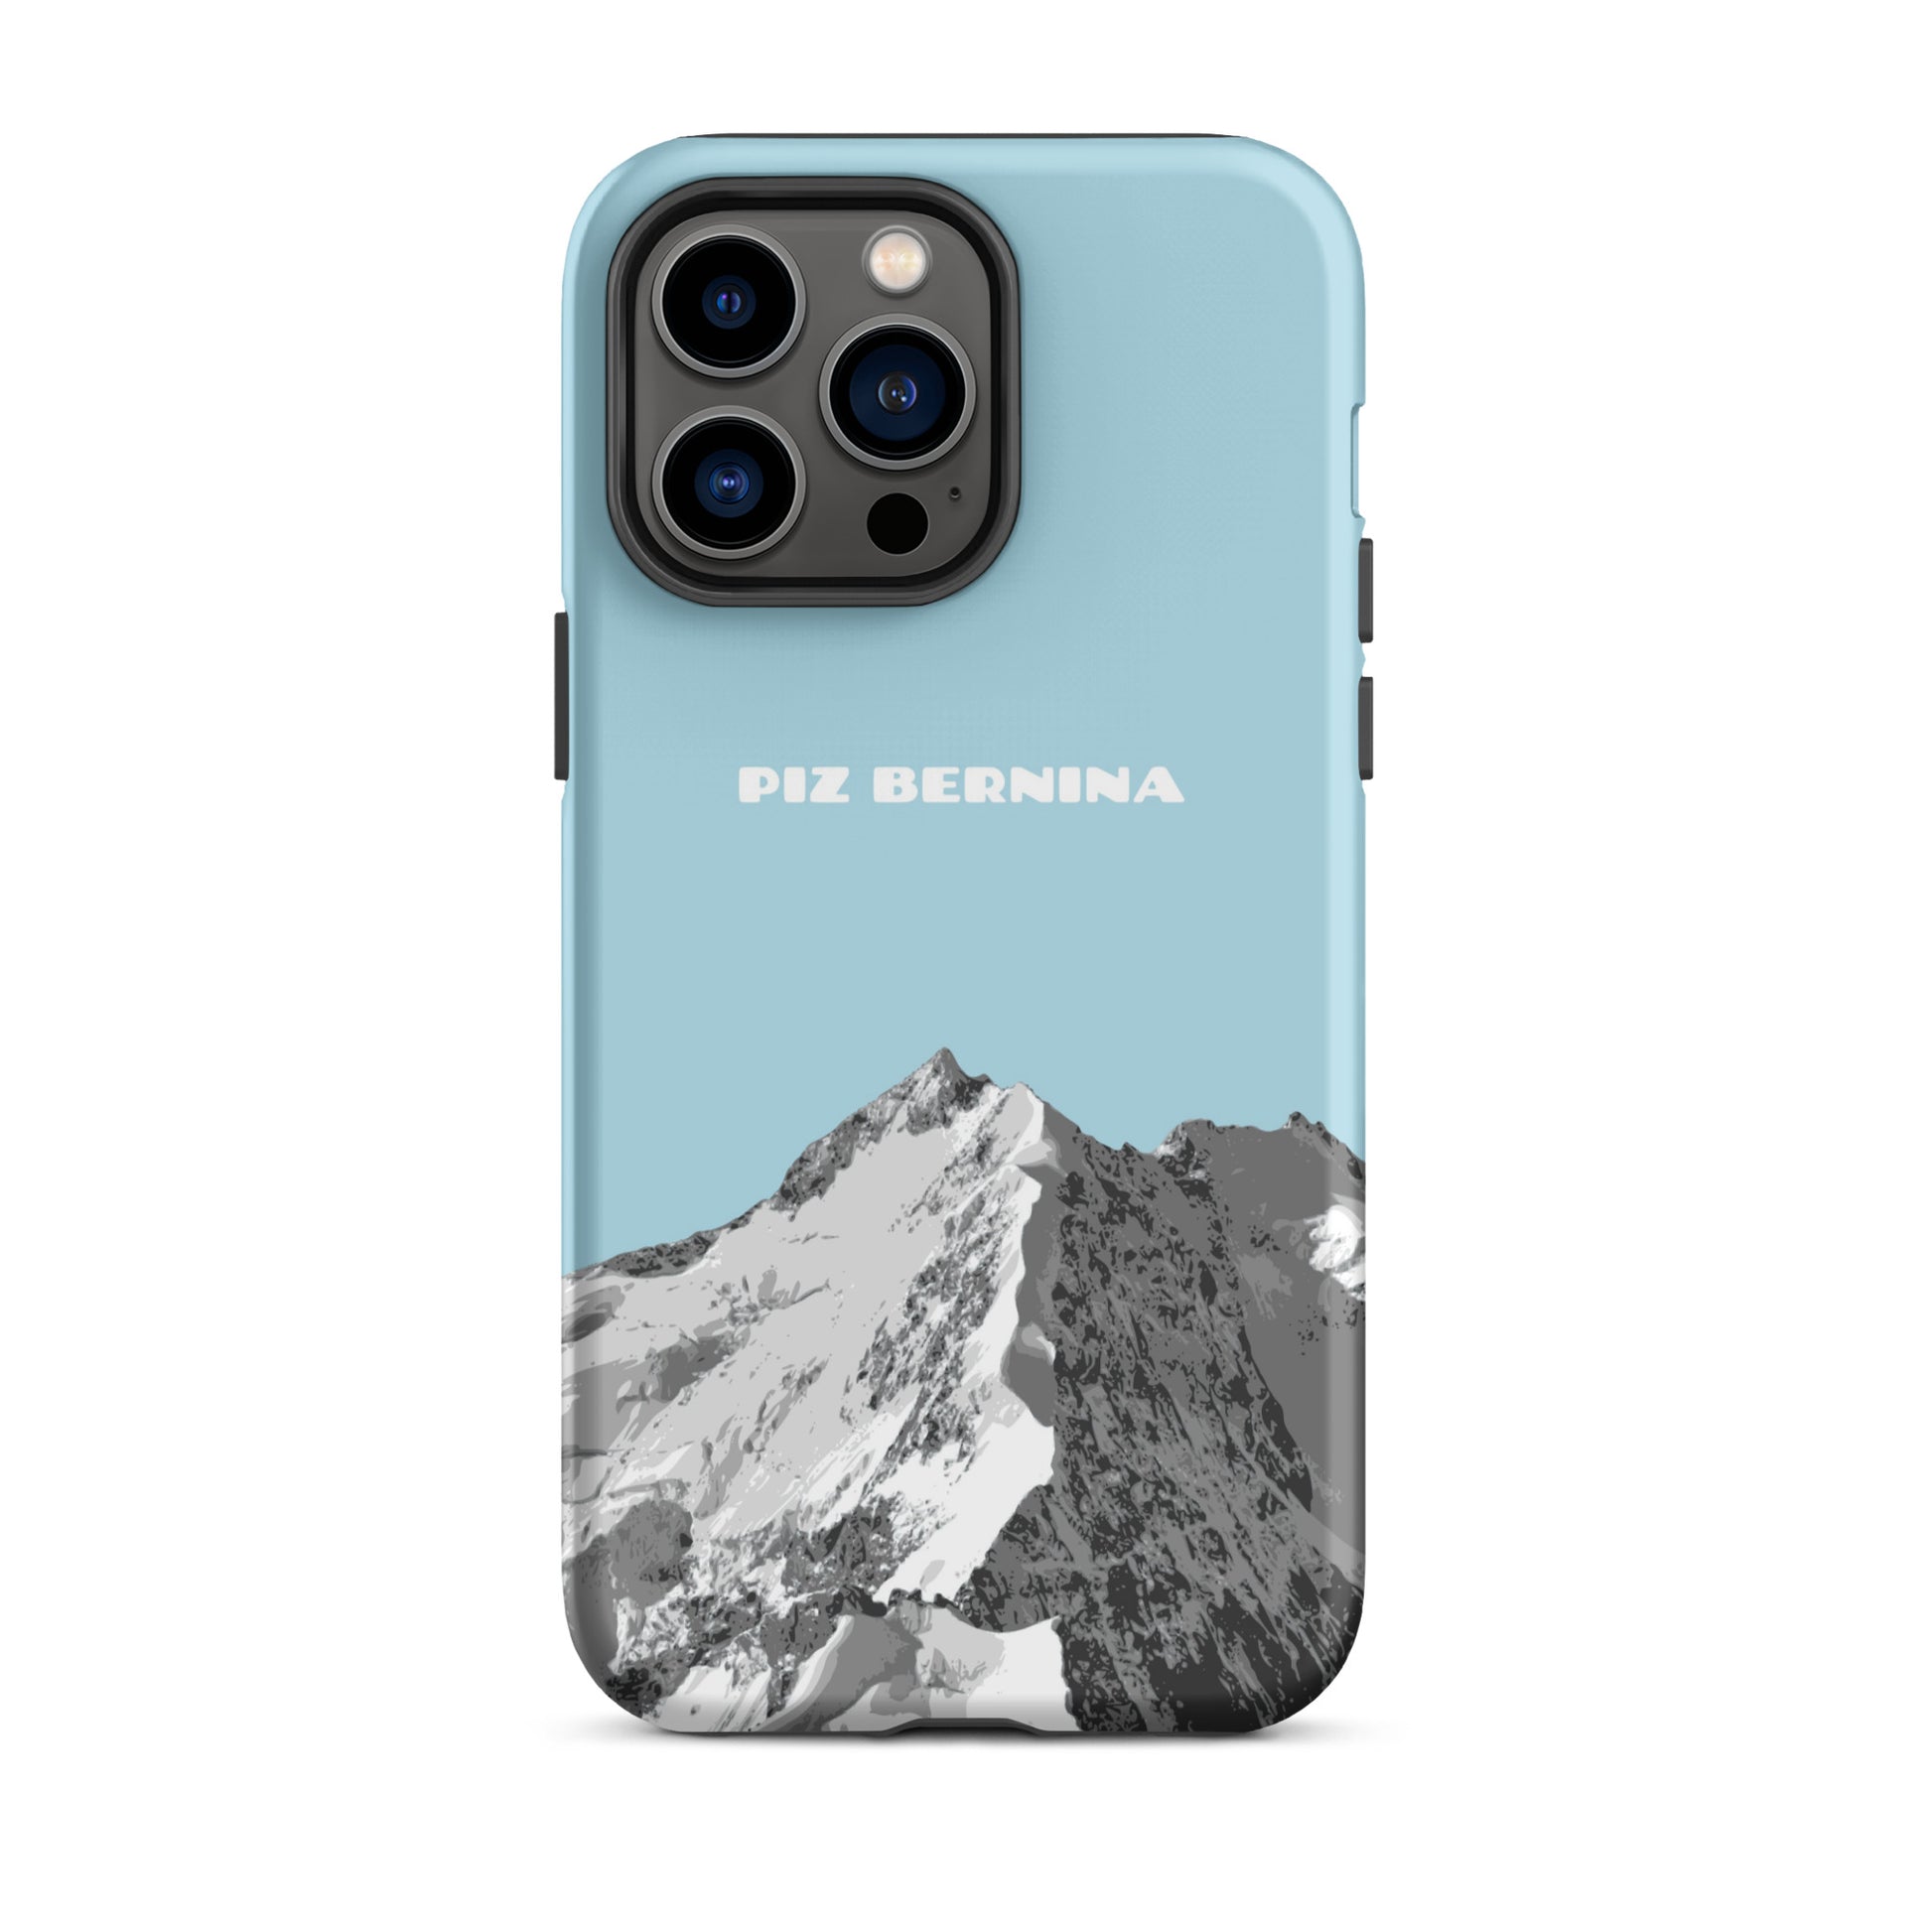 Hülle für das iPhone 14 Pro Max von Apple in der Farbe Hellblau, dass den Piz Bernina in Graubünden zeigt.